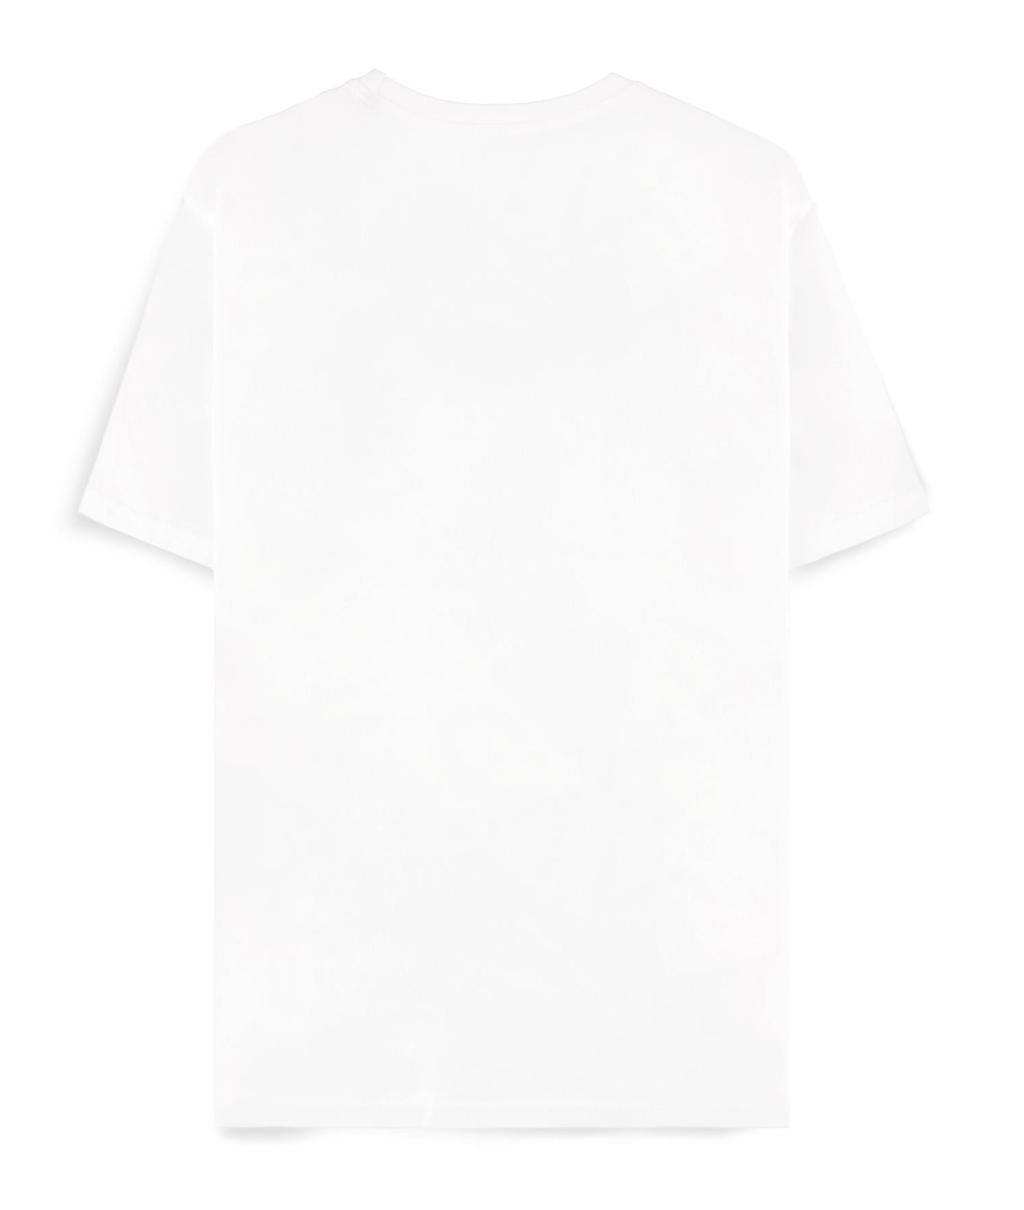 POKEMON - White Venusaur - Men's T-shirt (XL)